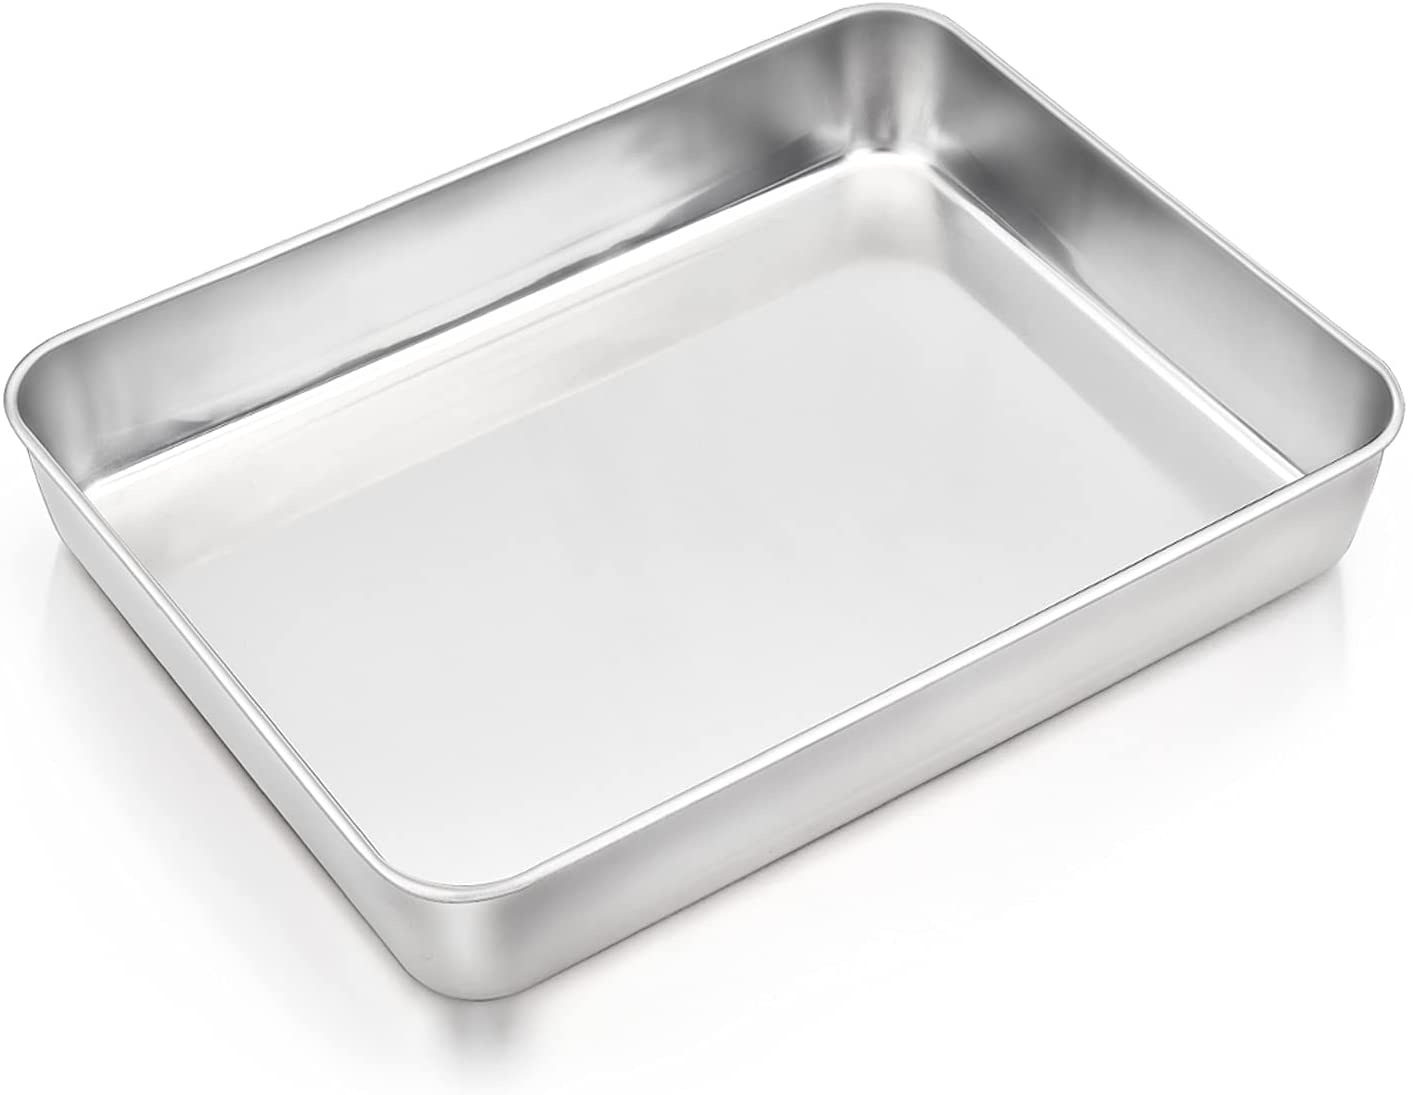 Stainless Steel Baking Pan 12.4” x 9.6” x 2” Rectangular Cake Pan.